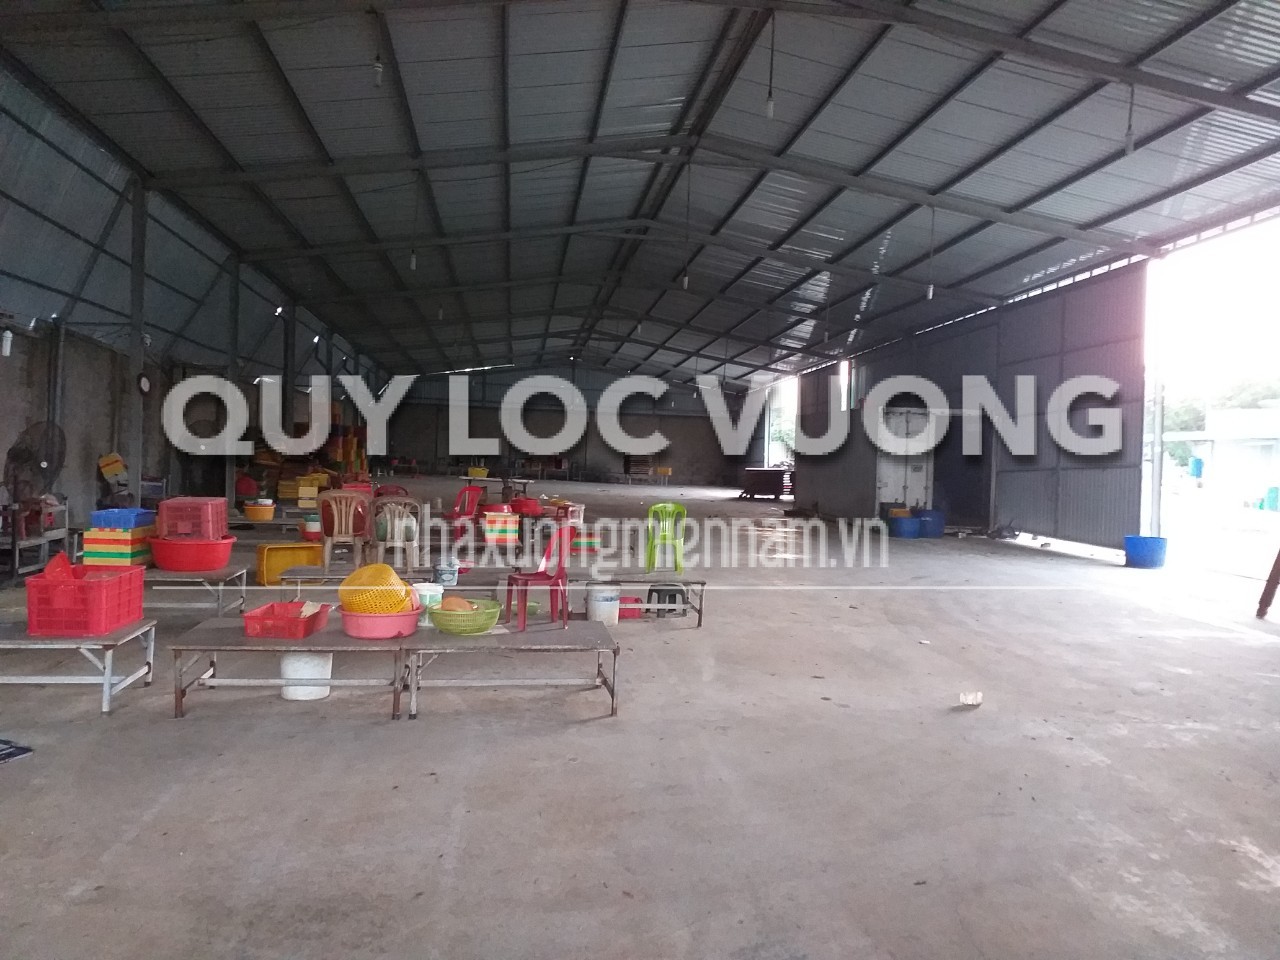 Cho thuê xưởng 3.000m2 ở Phước Tân, Bà Rịa Vũng Tàu - Quý Lộc Vượng - Công Ty TNHH MTV Quý Lộc Vượng